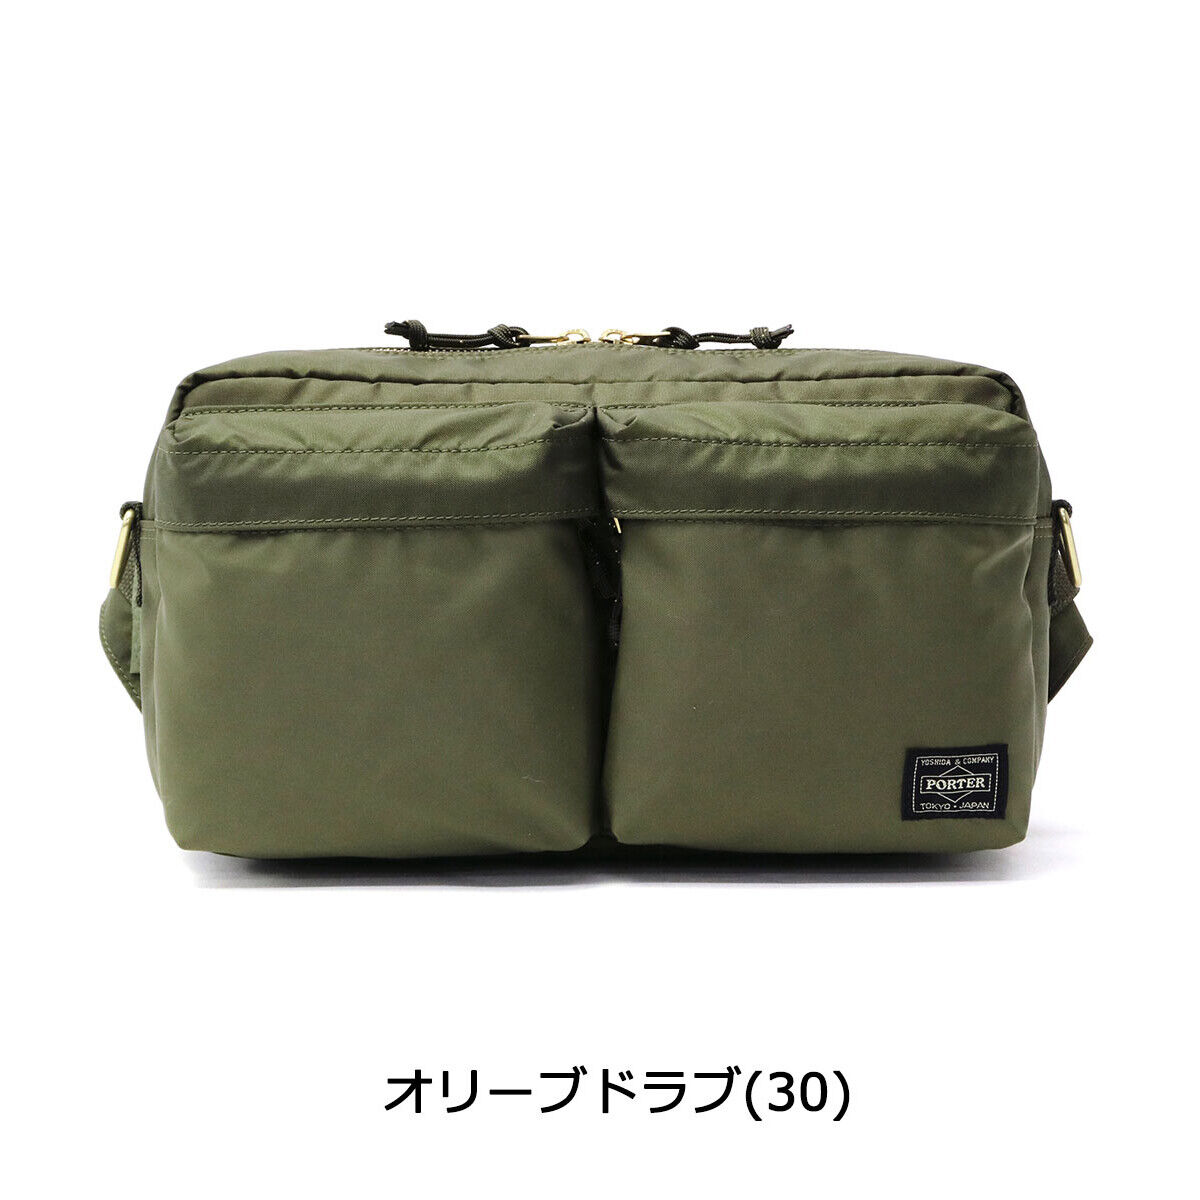 Yoshida Bag PORTER / PORTER FORCE 2WAY WAIST BAG 855-07418 Black Japan